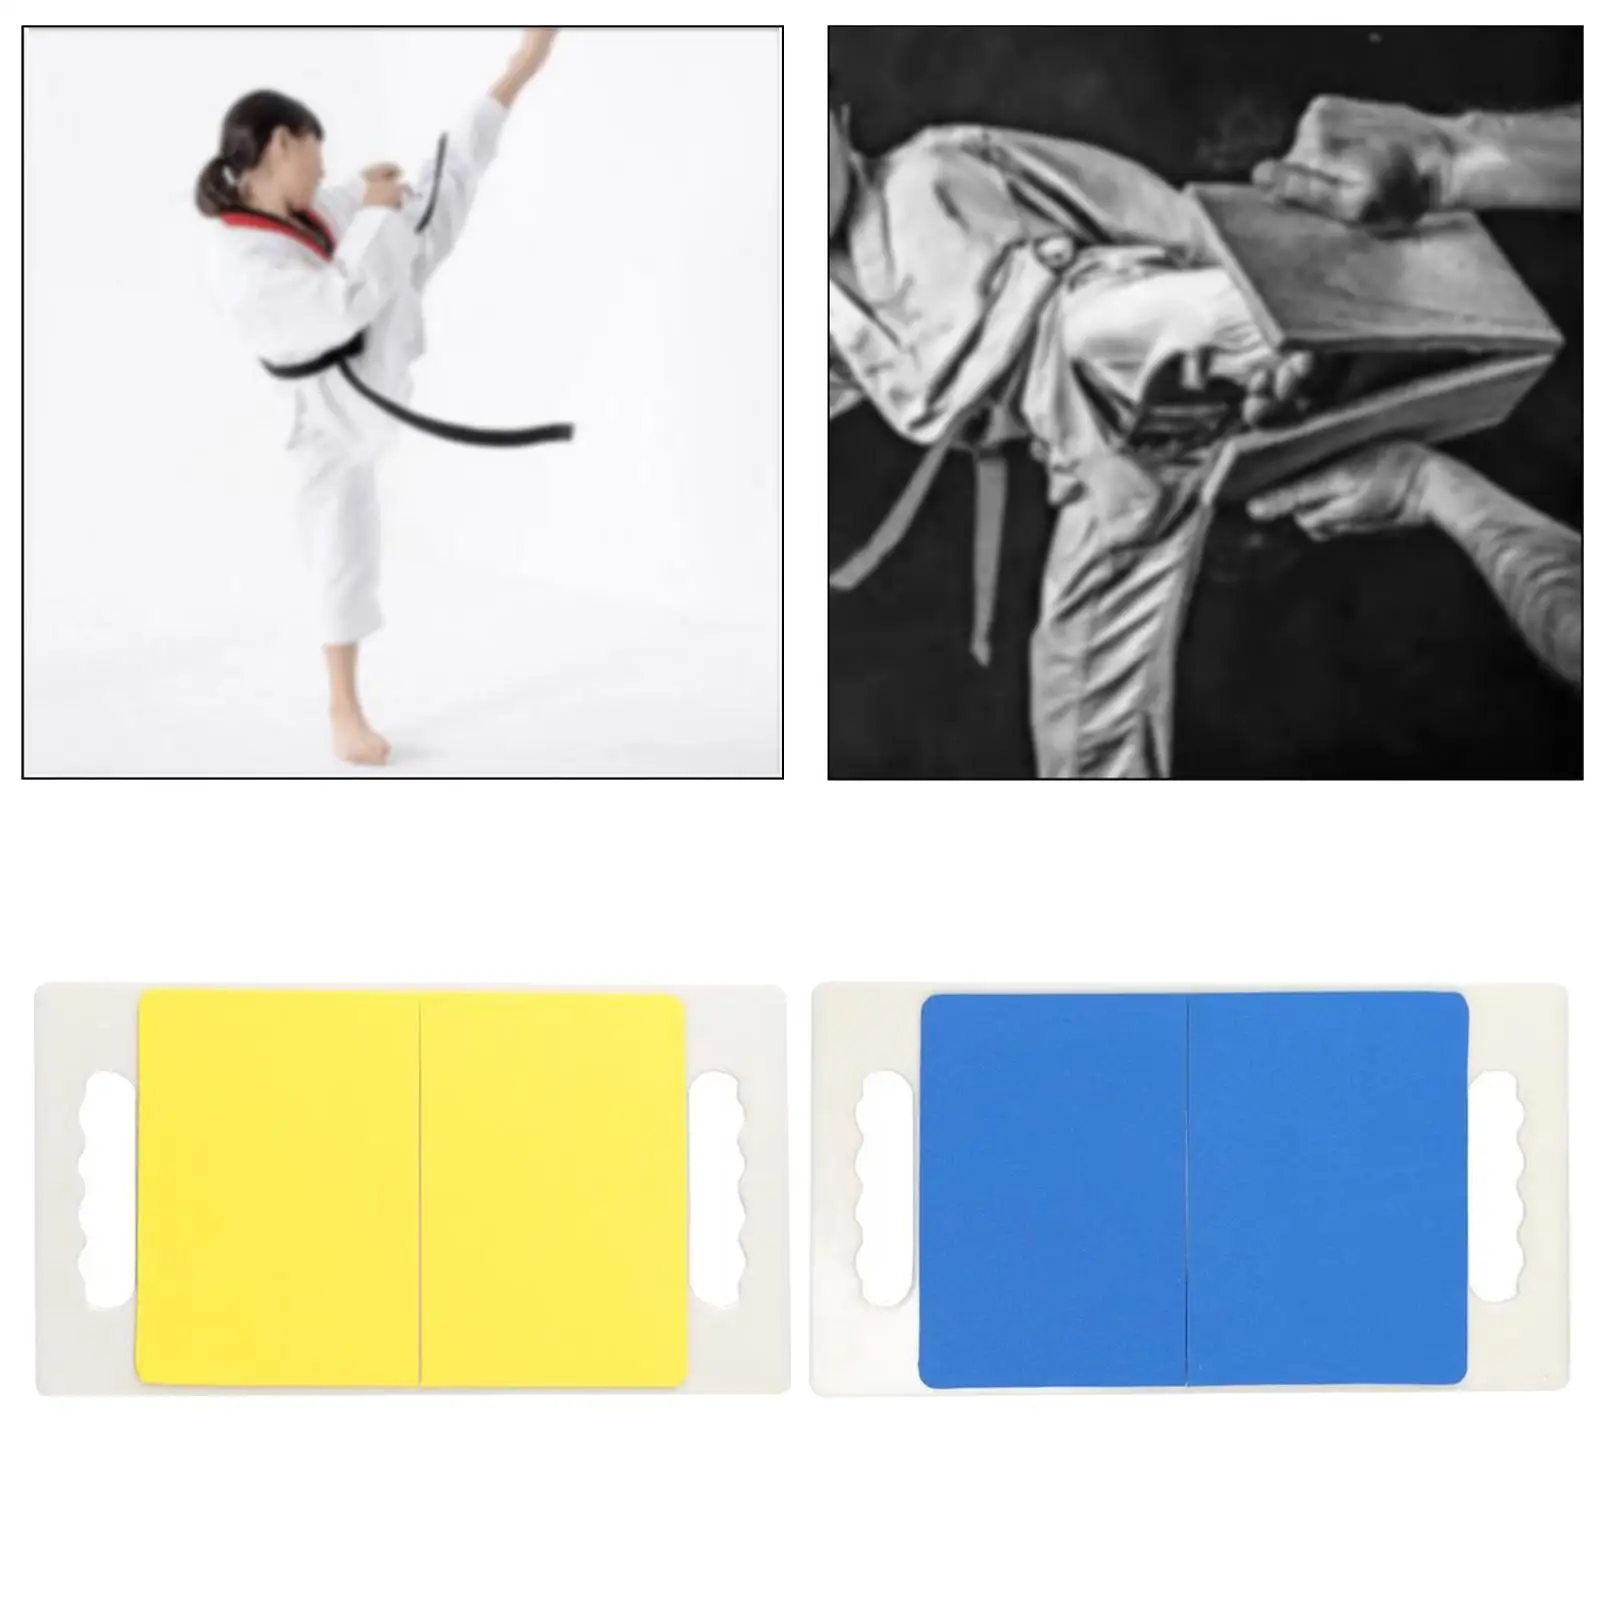 Taekwondo Karate Board, Rebreakable Punching Board, Reusable Breakable Boards Training Equipment